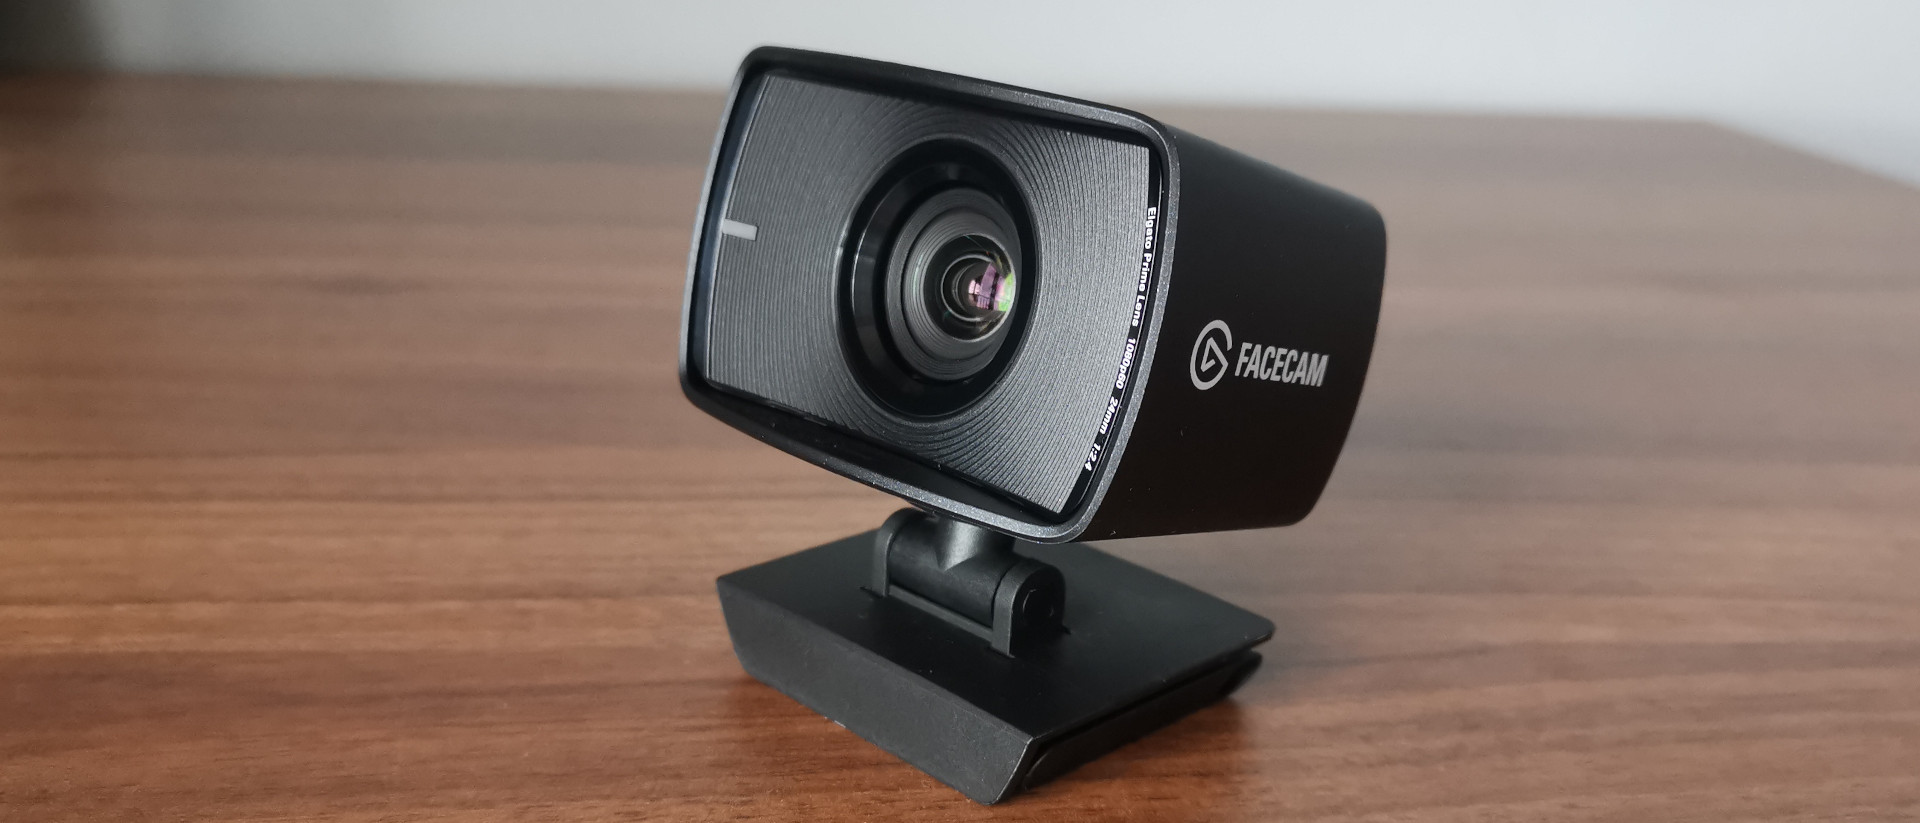 Elgato FaceCam webcam review